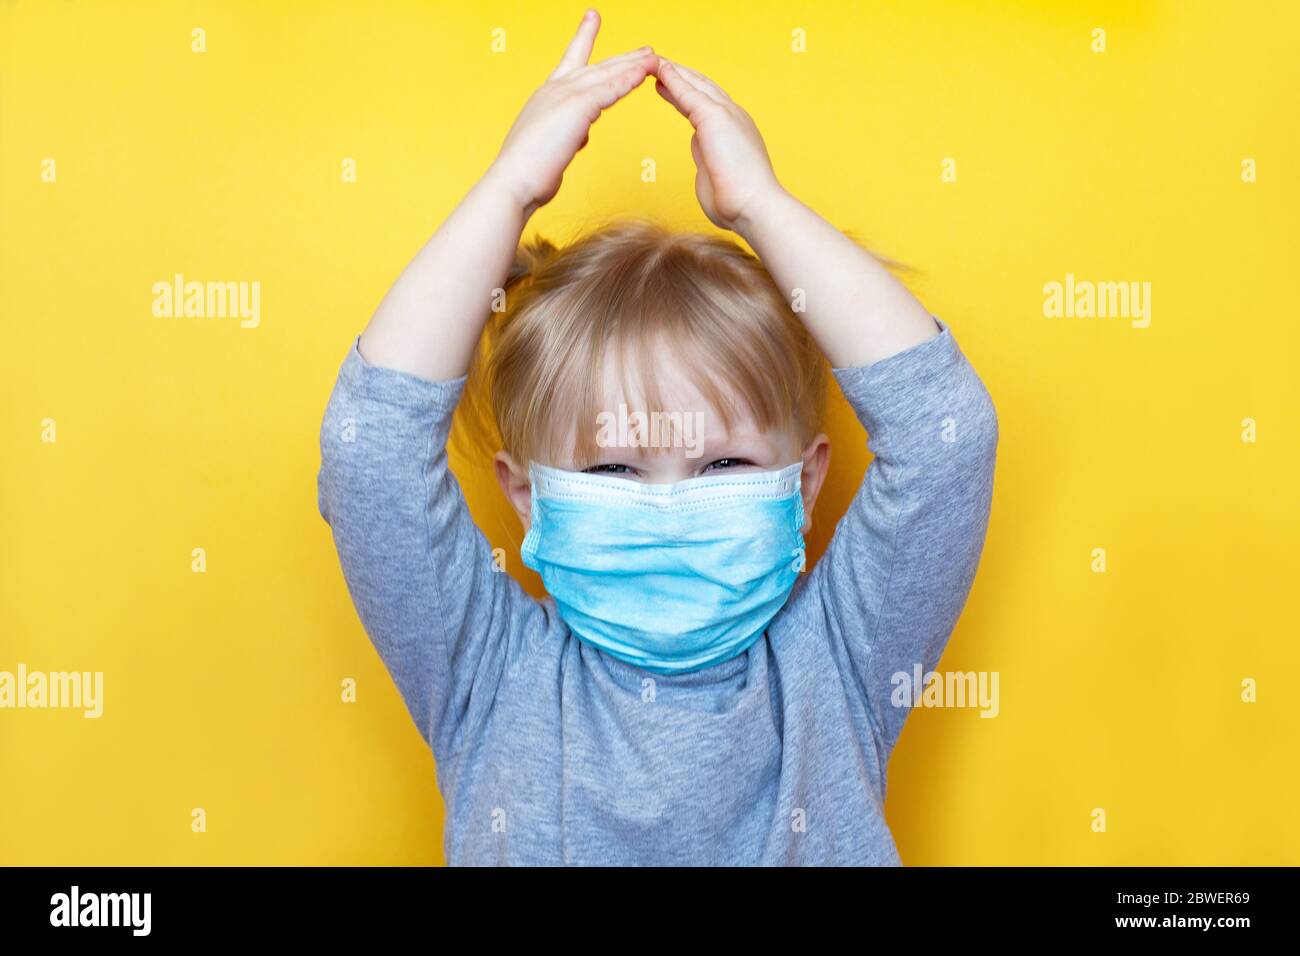 Kleines aukasisches Mädchen mit Schutzmaske. Konzept Isolierung zu Hause zu helfen, Coronavirus Covid-19 und Umweltschutz zu stoppen Stockfoto